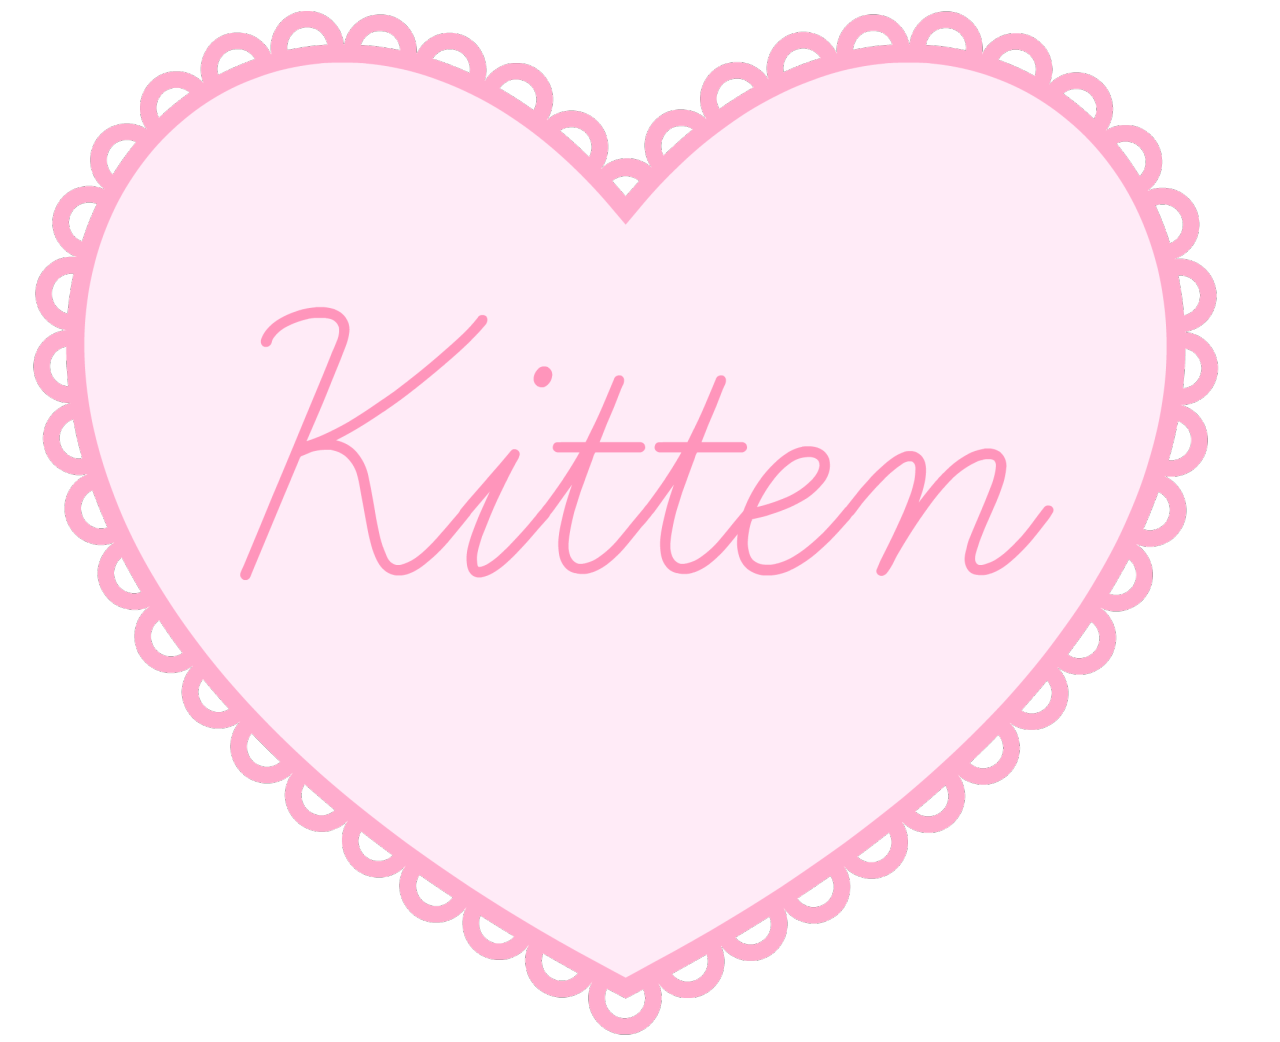 Kittens_playpen